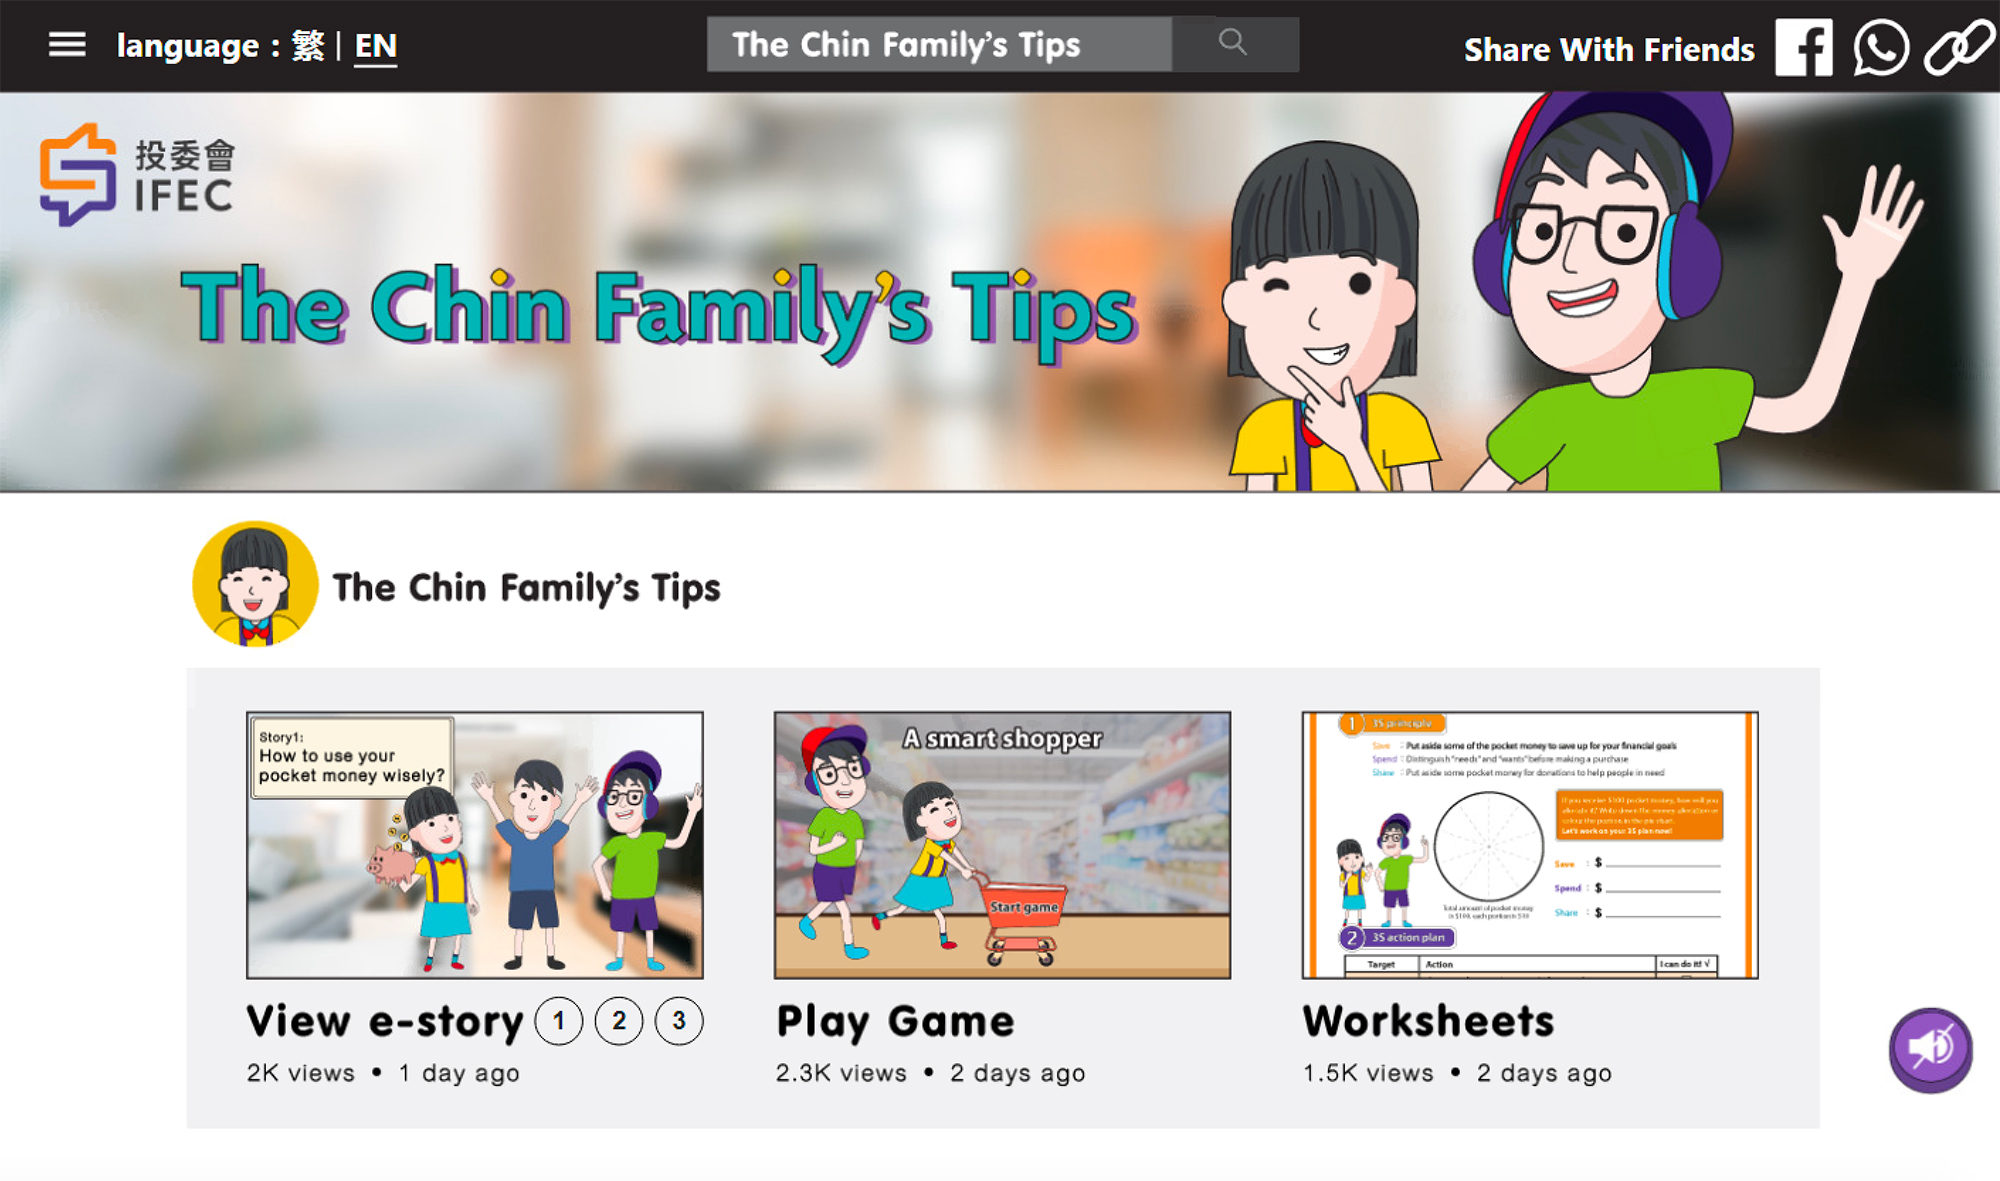 e-story: The Chin Family’s Tips